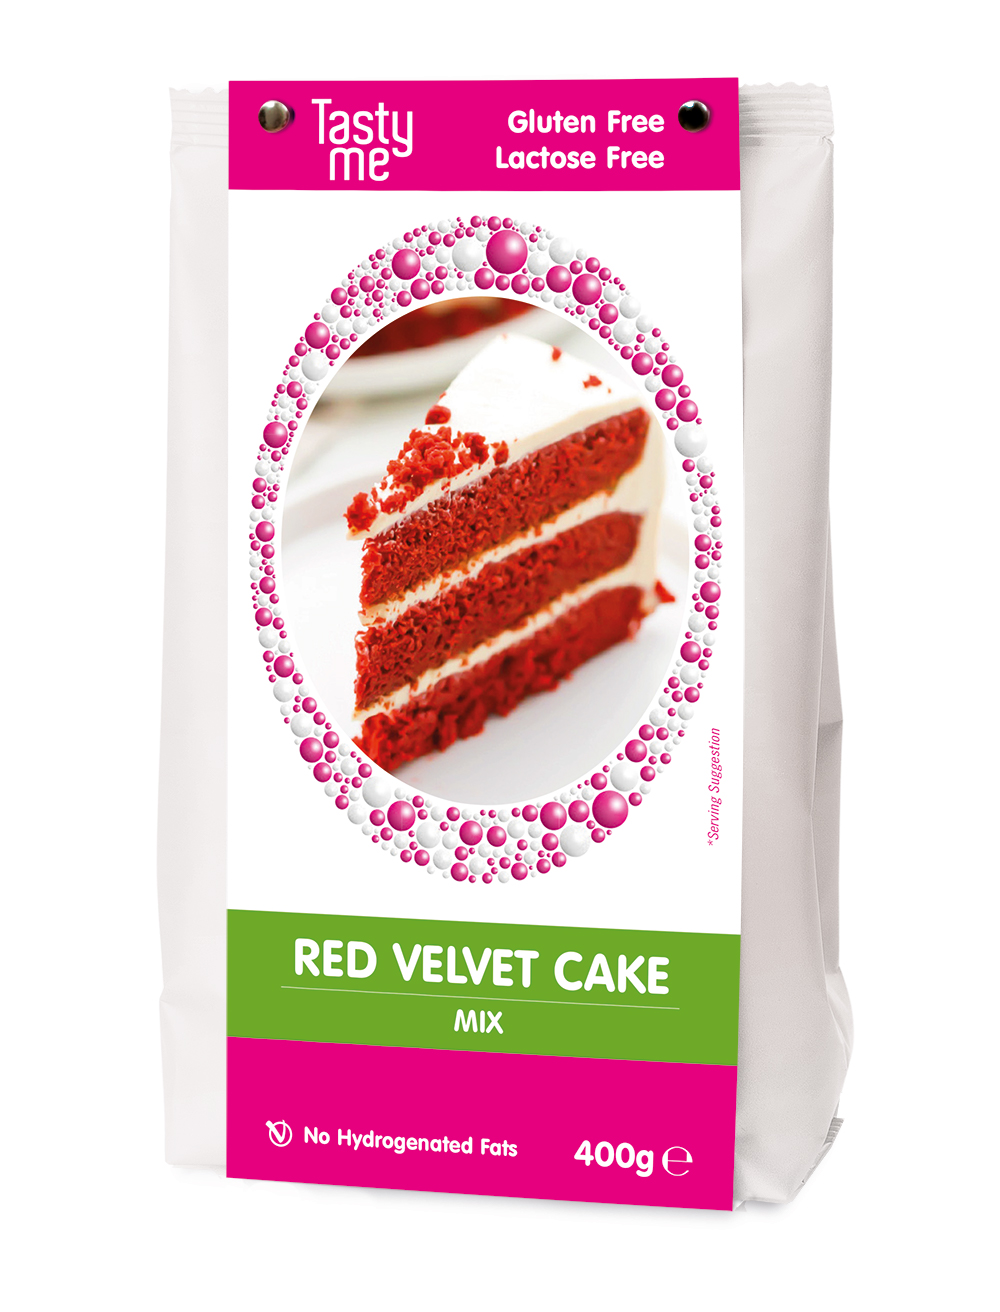 Red velvet cake mix 400g - gluten-free